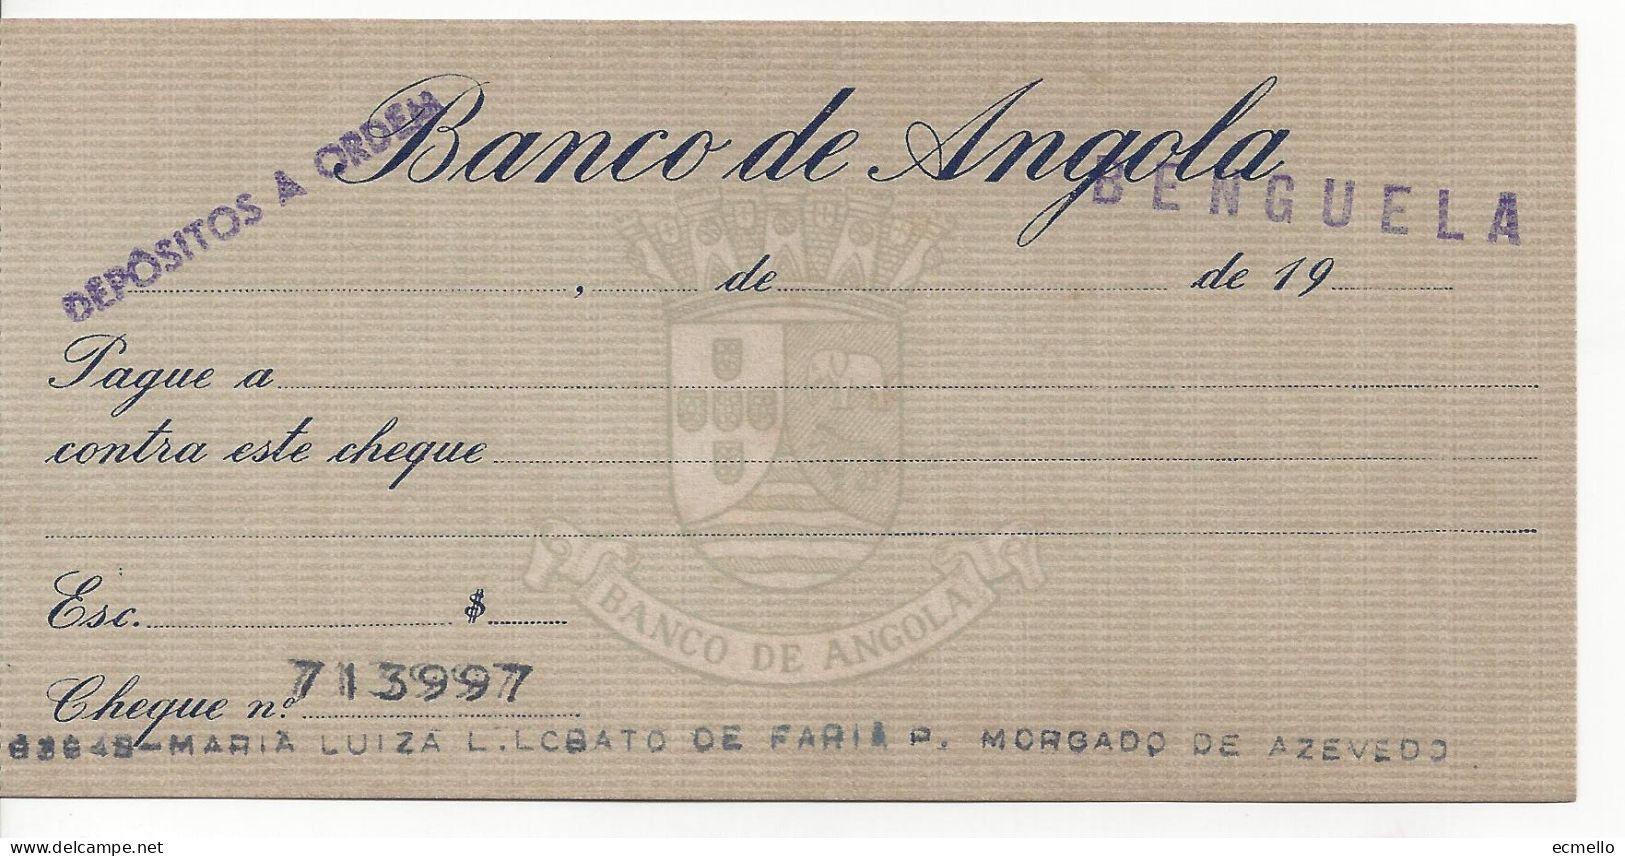 PORTUGAL ANGOLA CHEQUE CHECK BANCO DE ANGOLA, BENGUELA, 1950'S SCARCE - Assegni & Assegni Di Viaggio